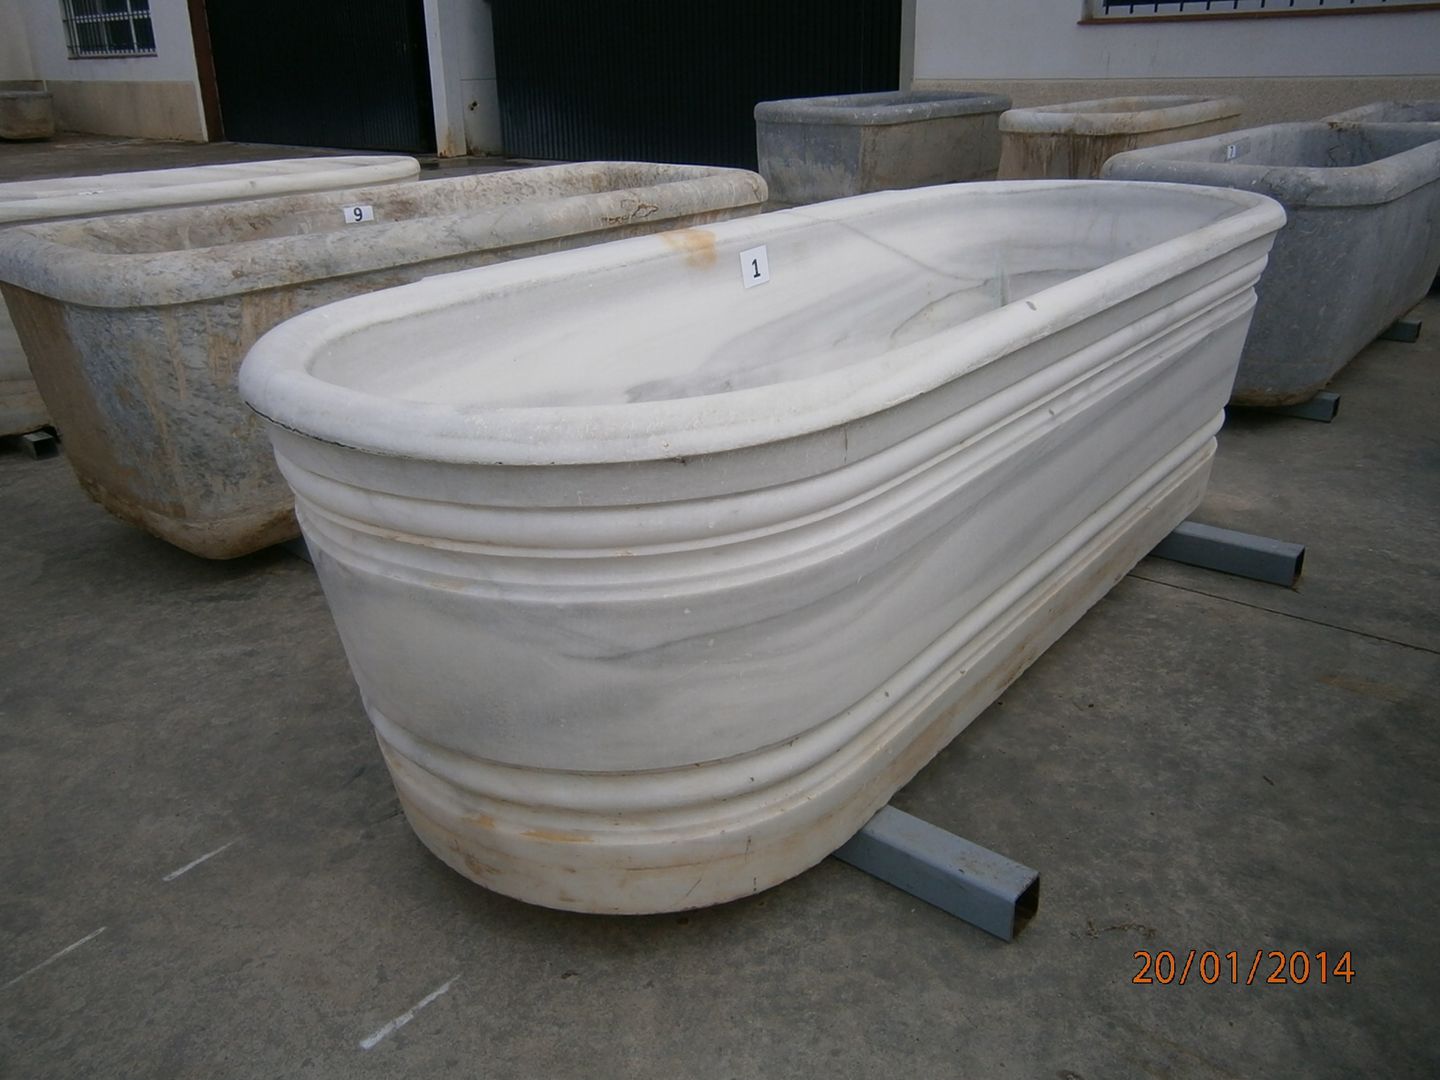 Antigua bañera de mármol torneada. Anticuable.com Baños de estilo ecléctico Mármol Bañeras y duchas